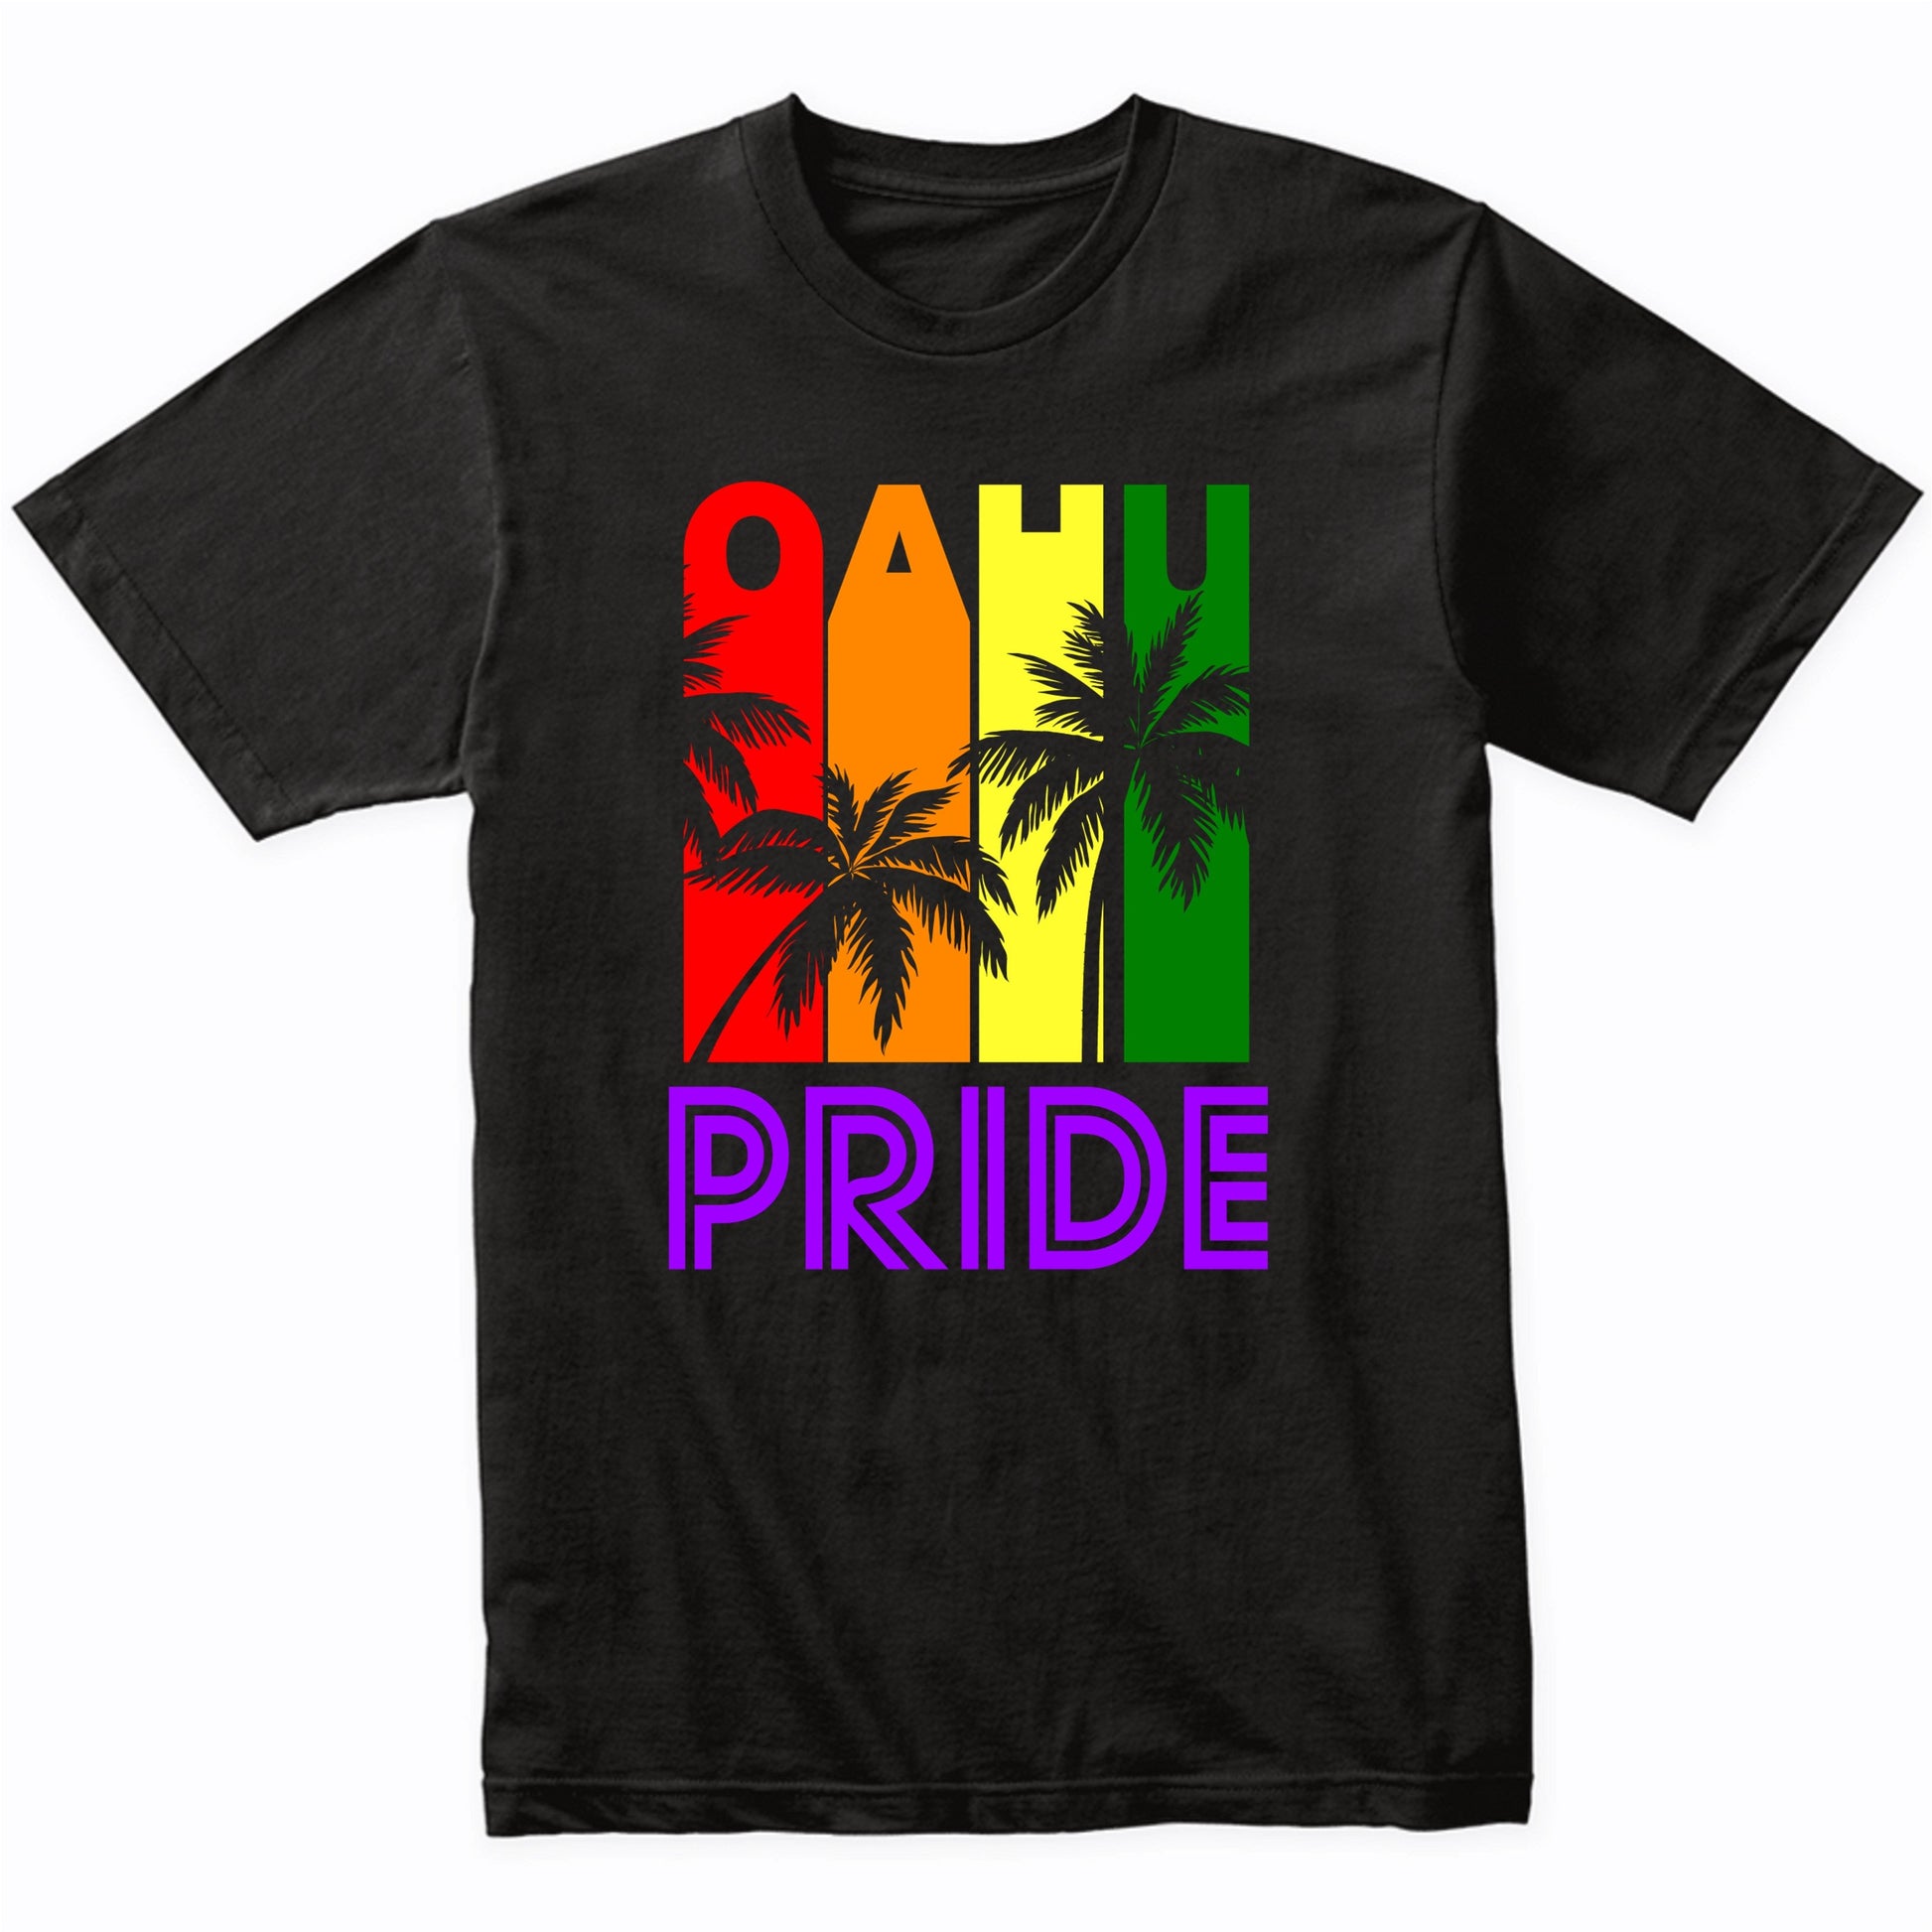 Oahu Pride Gay Pride LGBTQ Rainbow Palm Trees T-Shirt